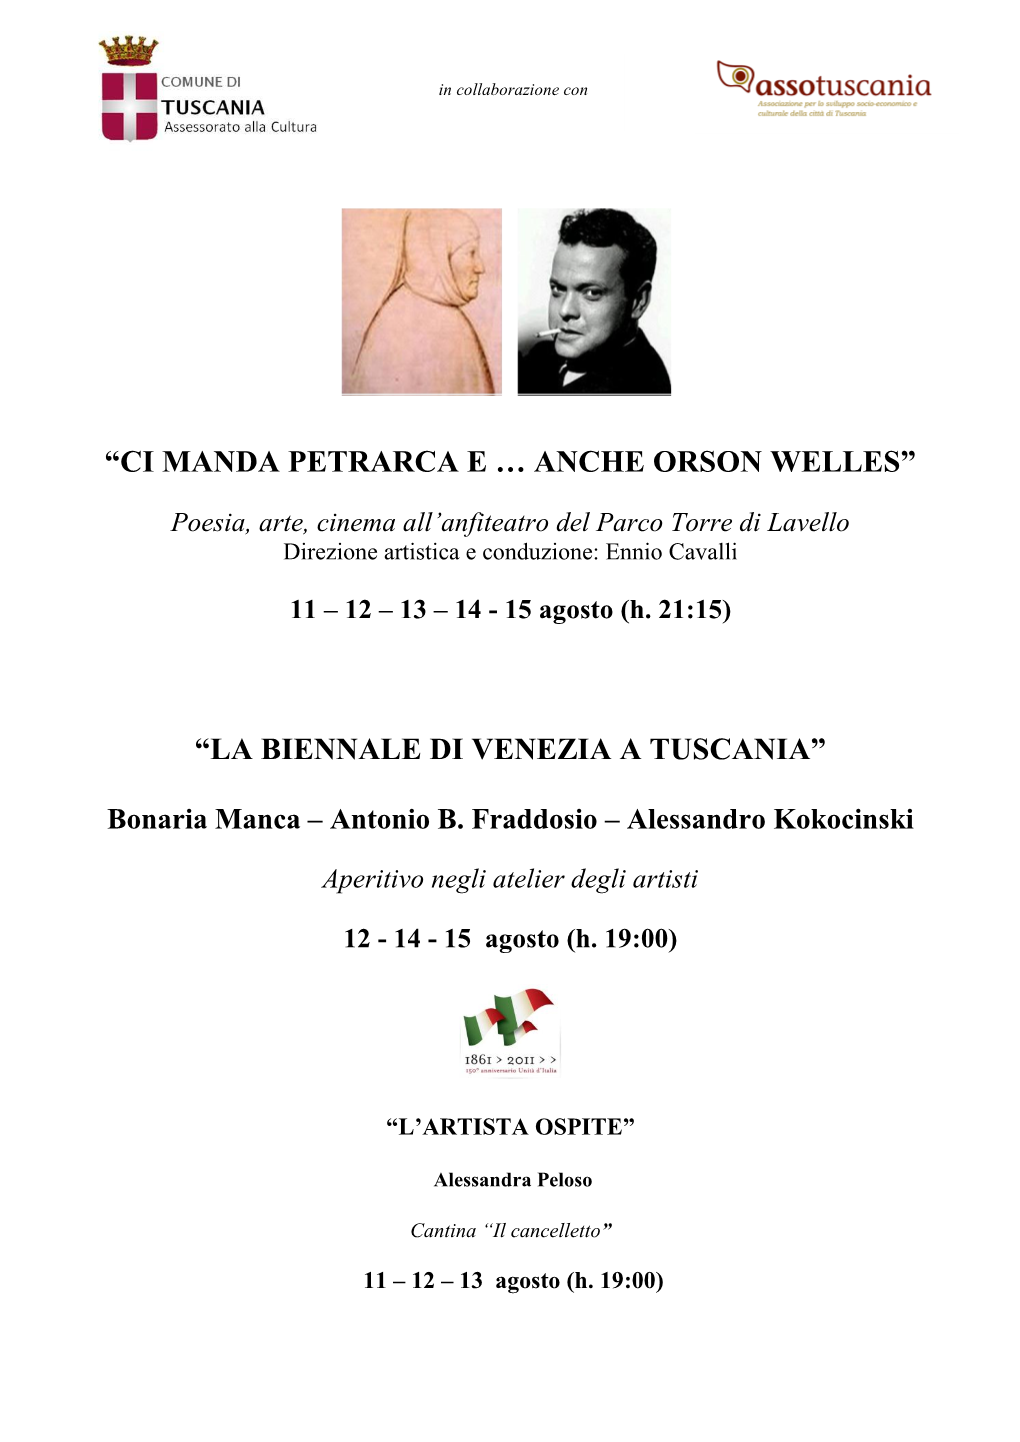 “Ci Manda Petrarca E … Anche Orson Welles” “La Biennale Di Venezia a Tuscania”